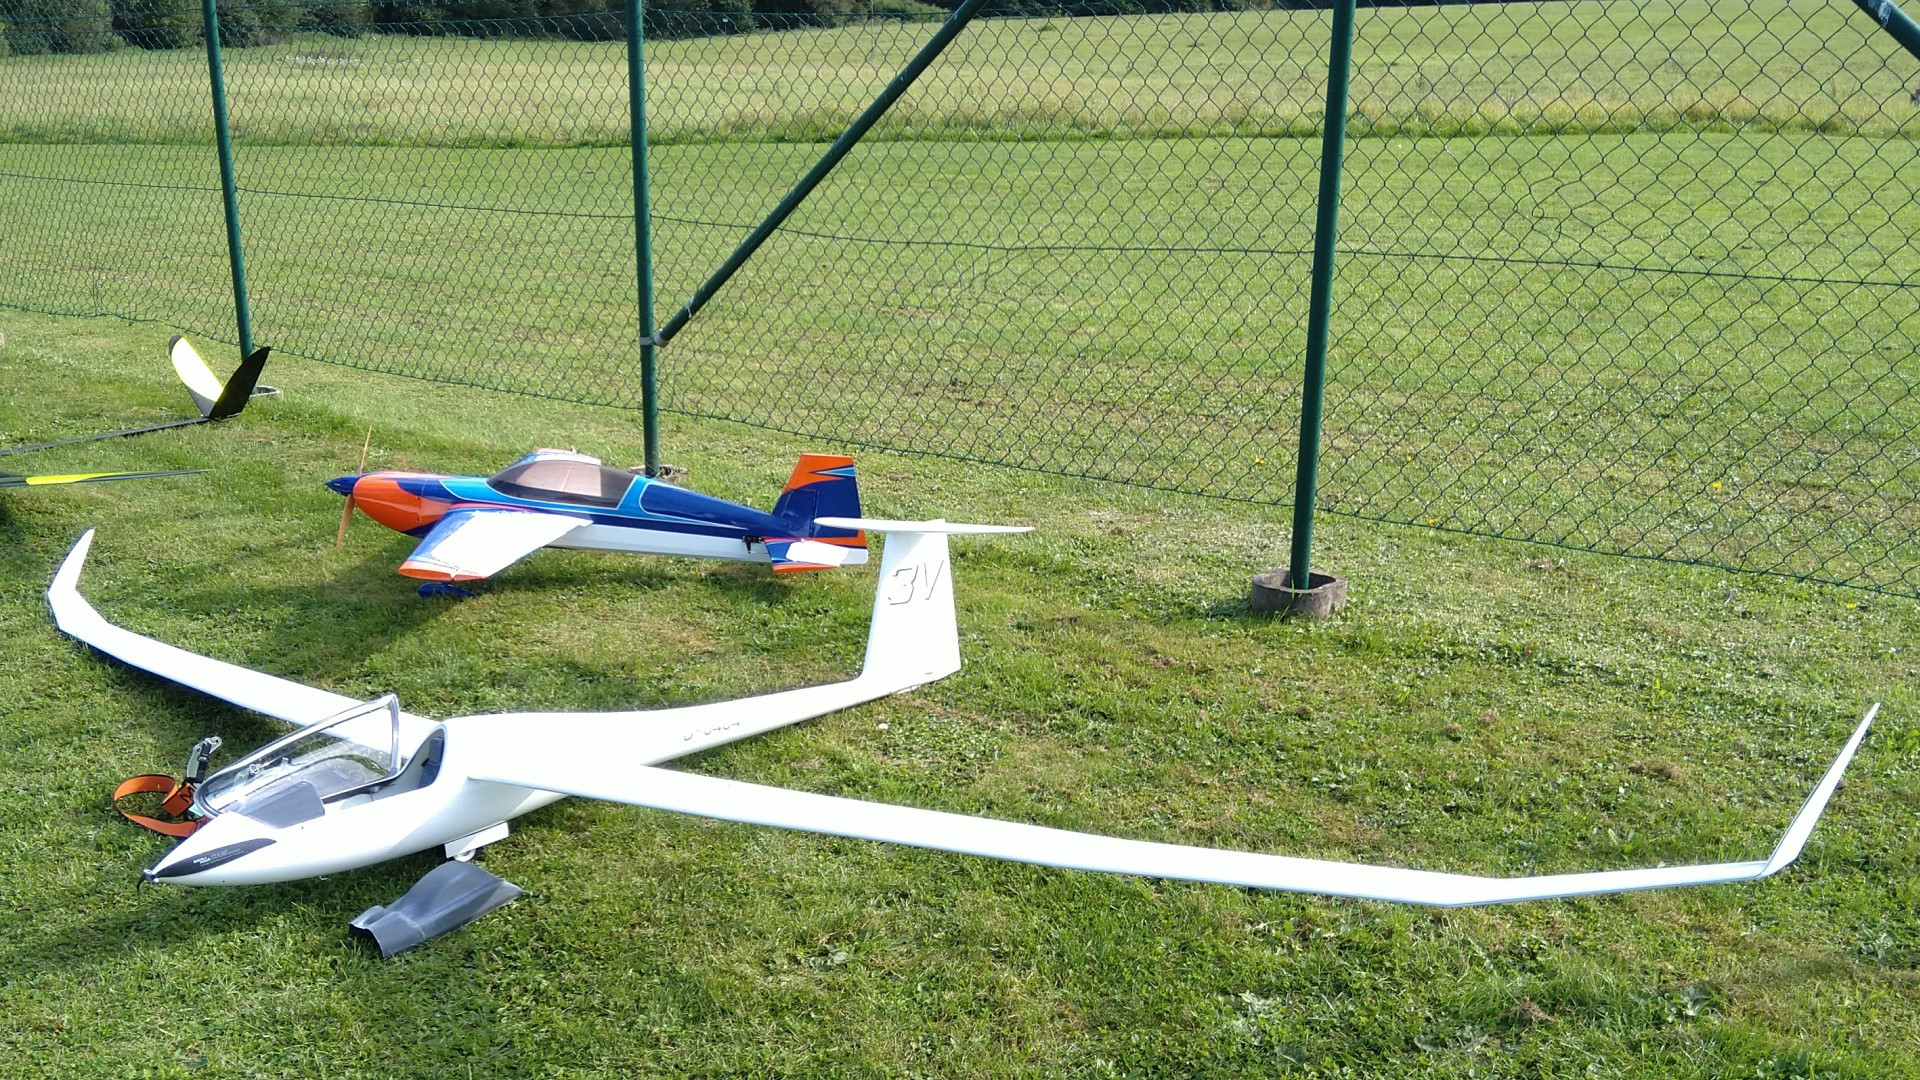 Ventus 3 (Composite RC Gliders)